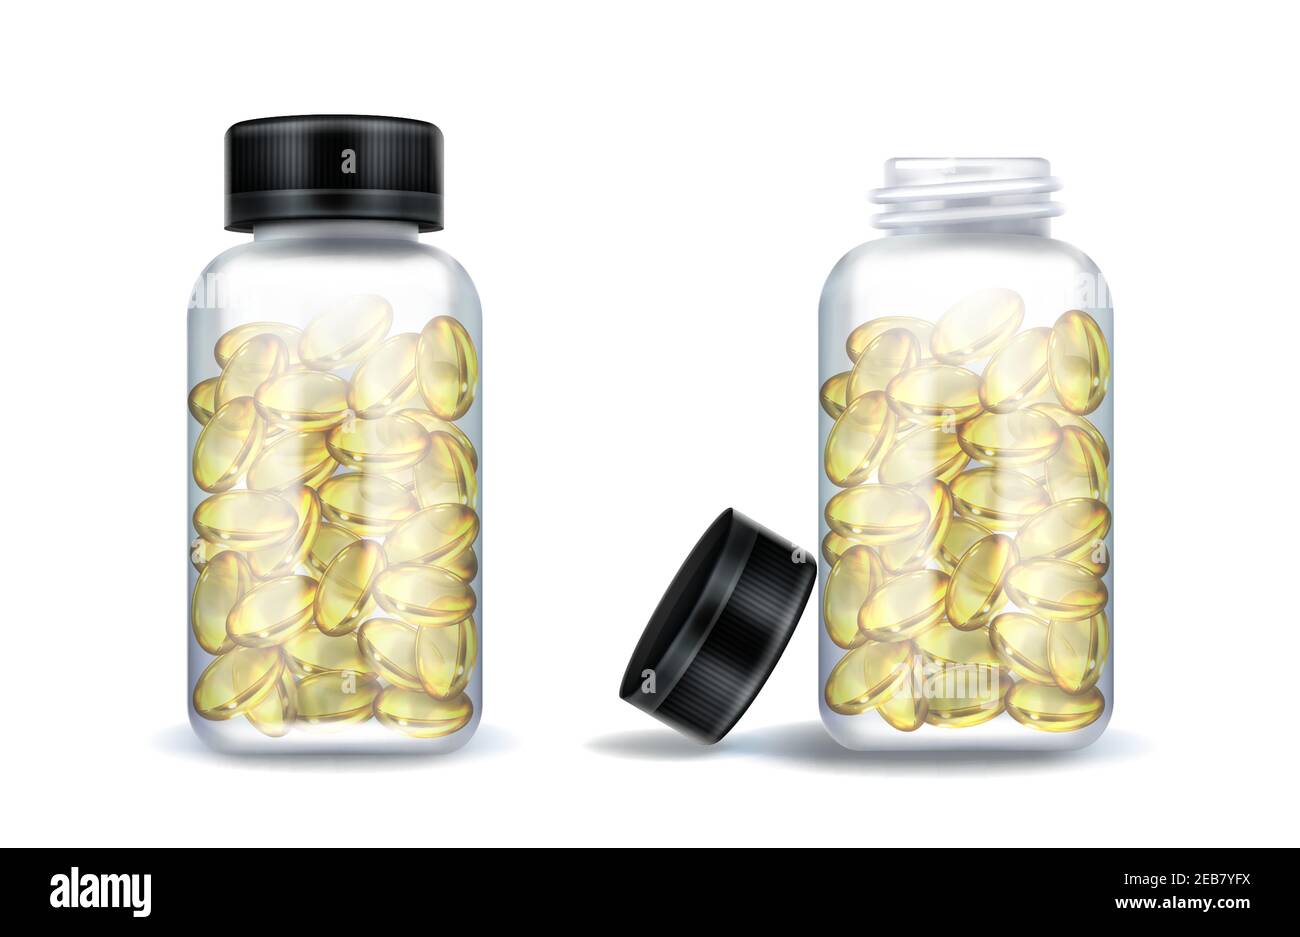 Flacons pour médicaments avec capsules jaunes claires isolées sur fond blanc. Maquette vectorielle réaliste de récipient transparent en verre ou en plastique avec couvercle noir ouvert et fermé. pots 3d avec médicaments médicaux Illustration de Vecteur